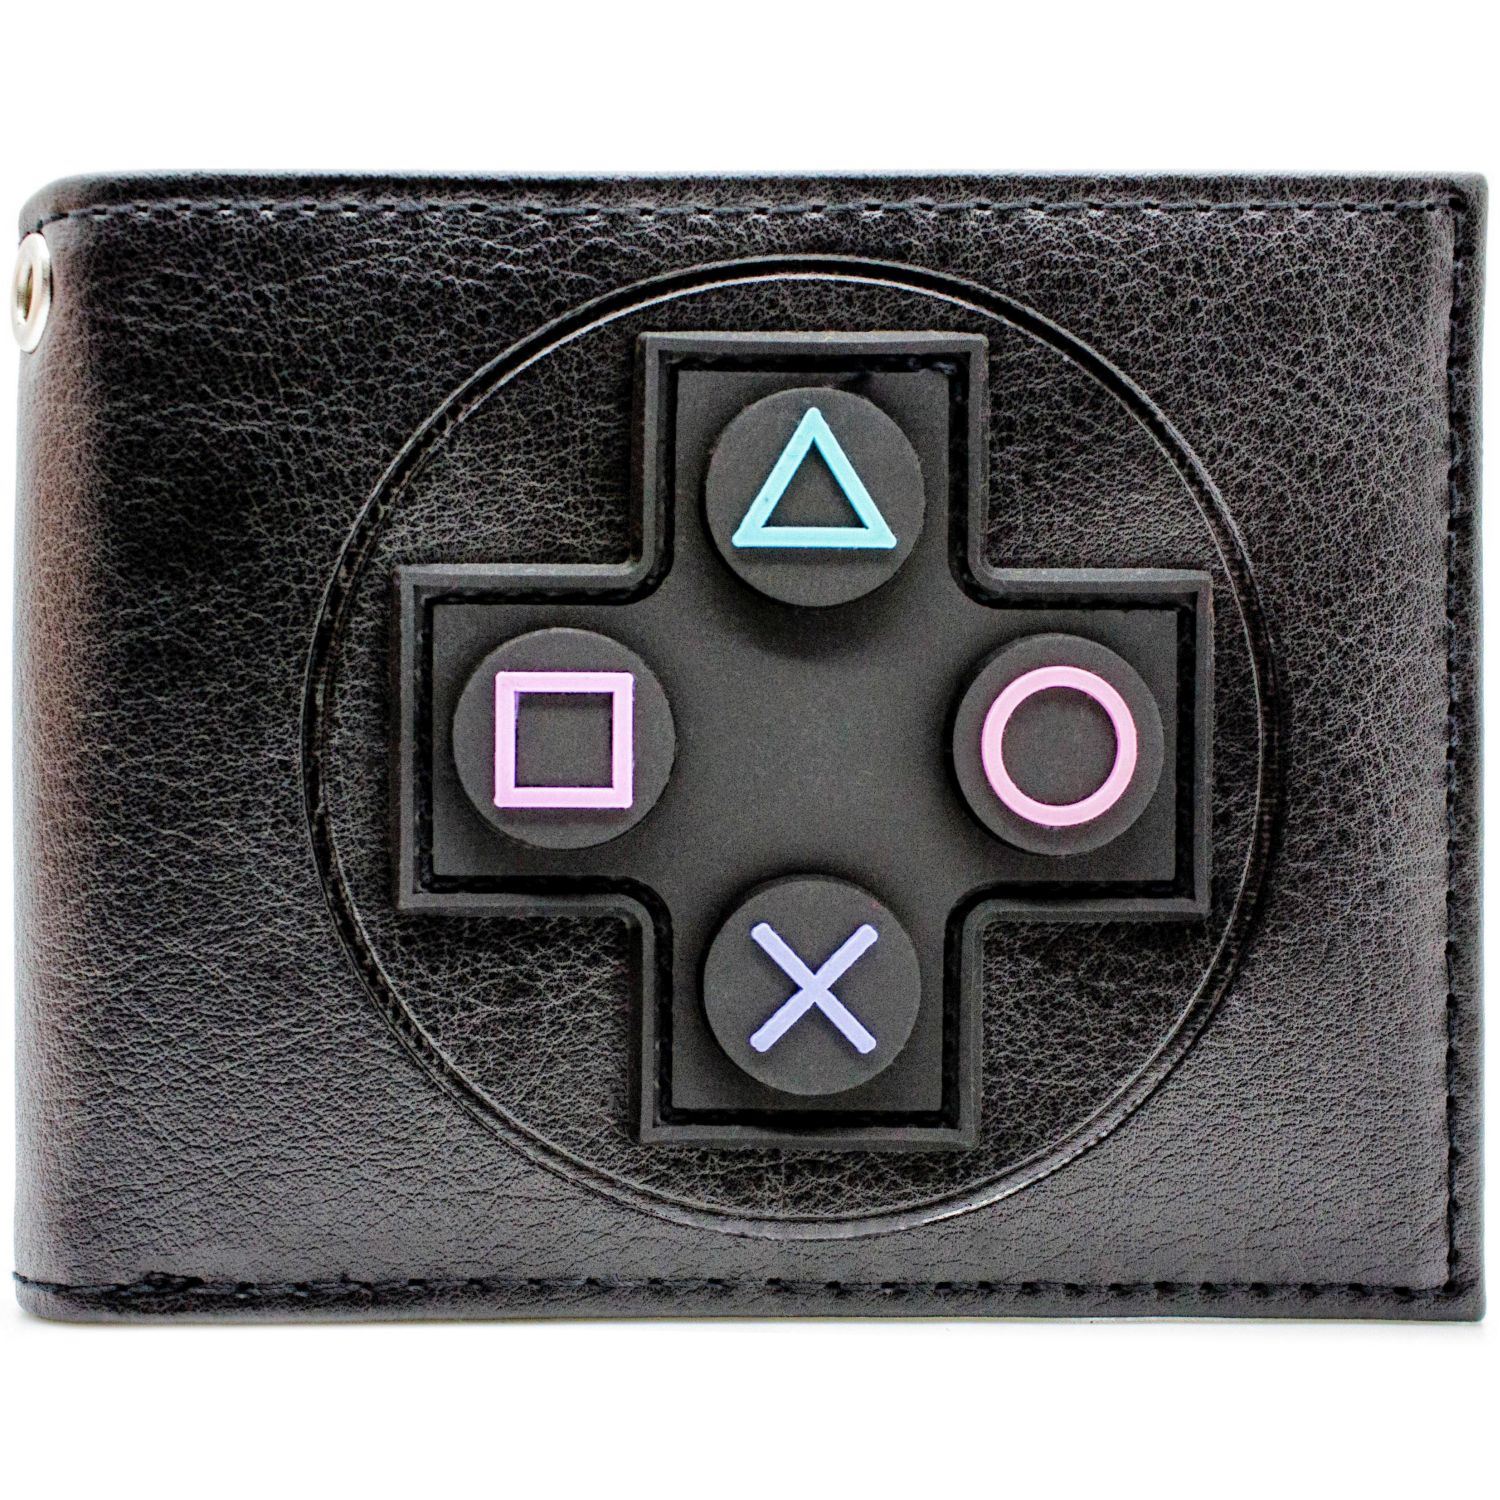 Buy Sony Playstation Controller Black & Card Bi-Fold